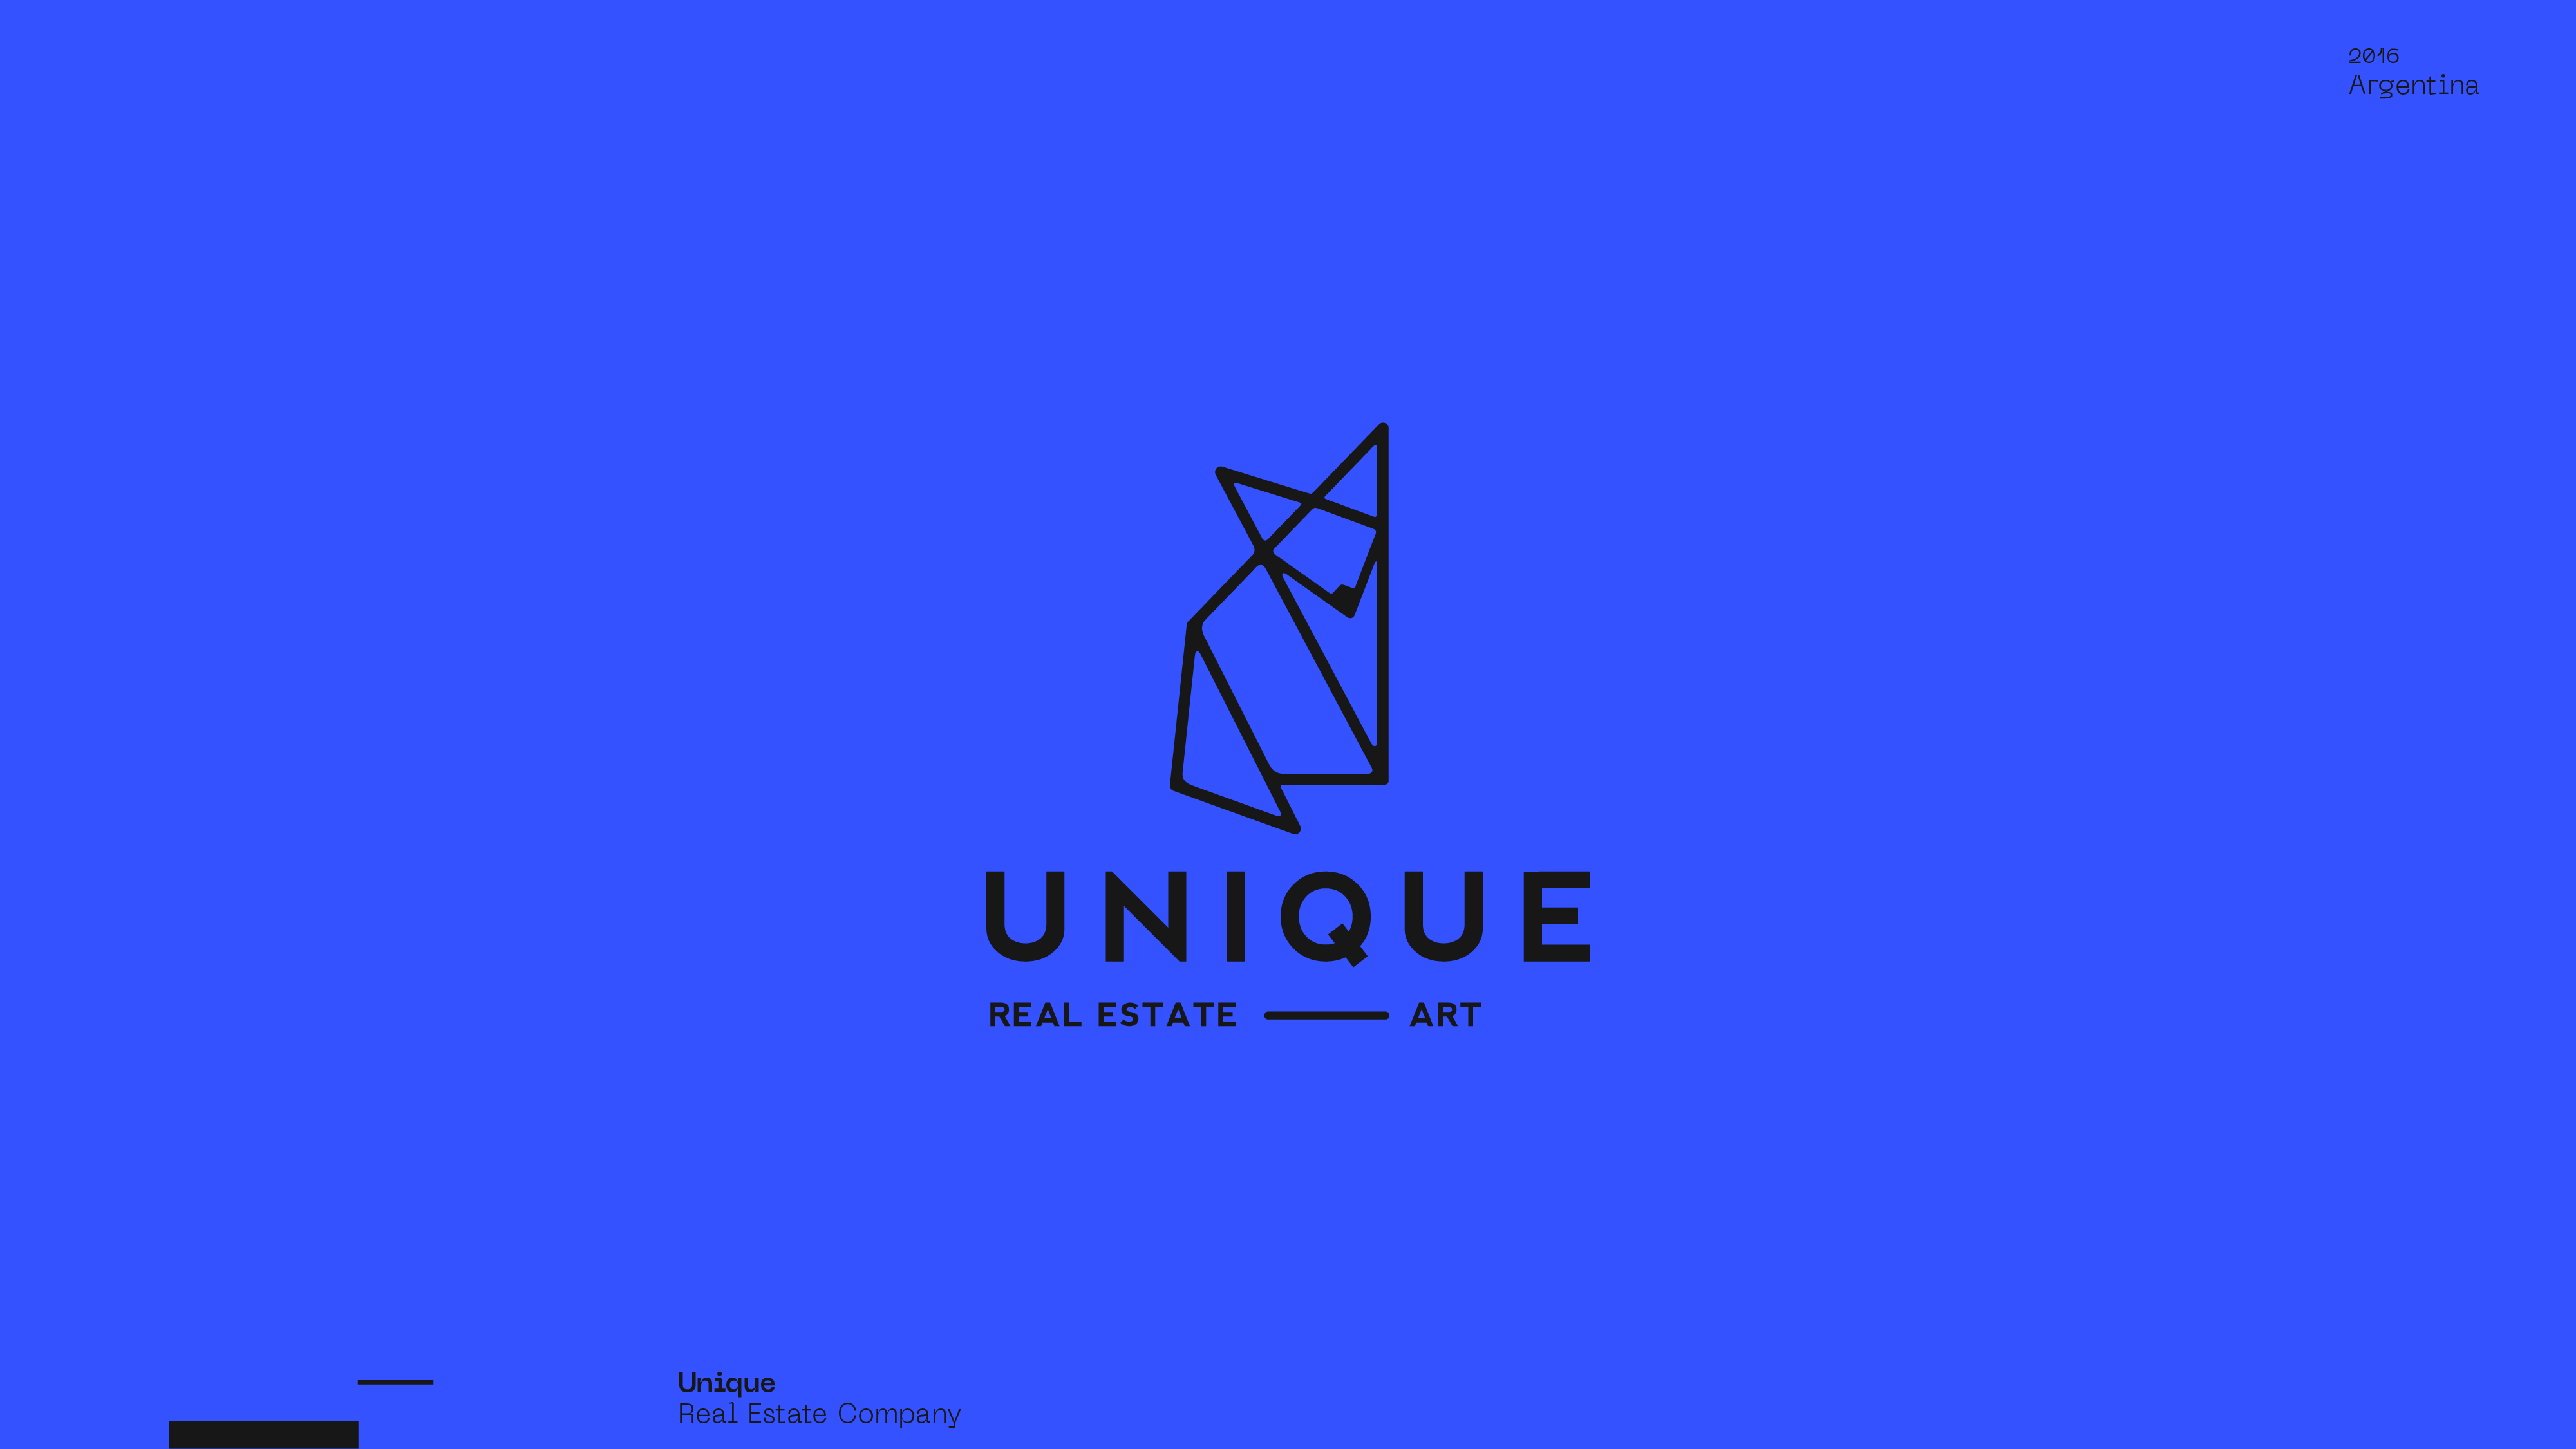 Guapo Design Studio by Esteban Ibarra Logofolio — Unique